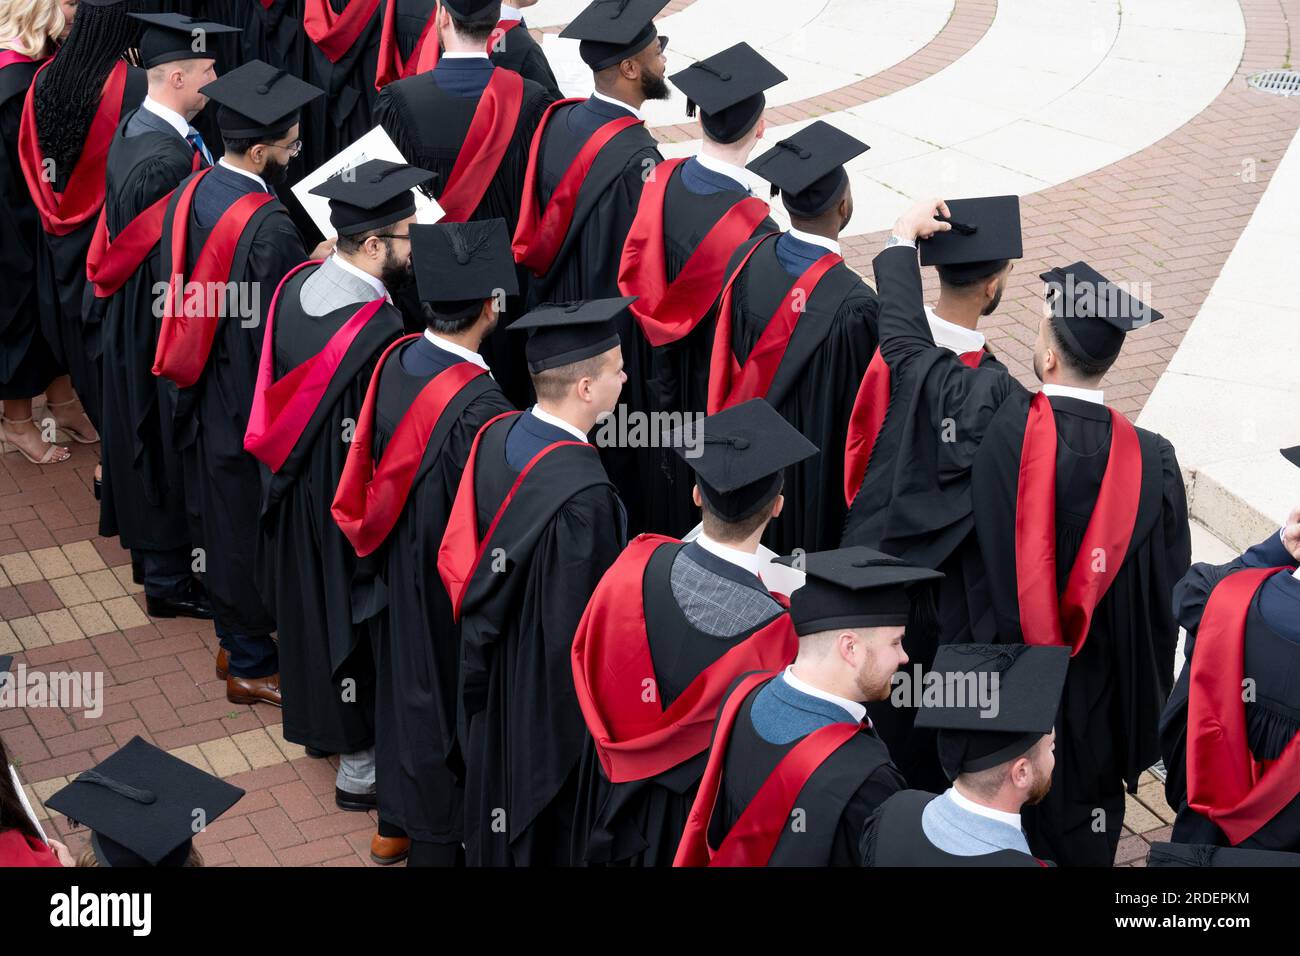 University of Warwick Graduation Day. Stock Photo